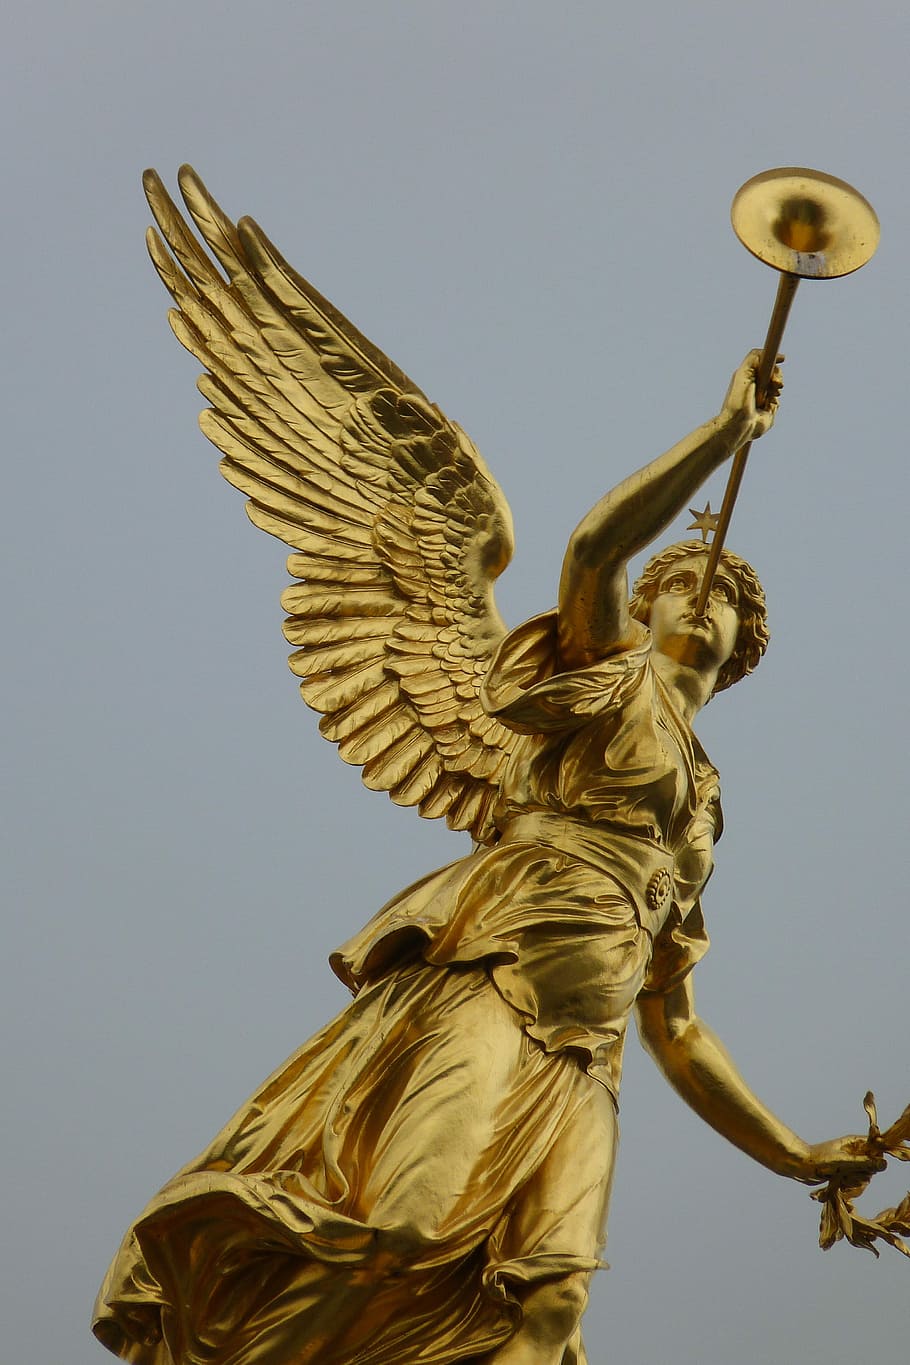 brass angel, wind instrument statue, brass, Angel, wind instrument, statue, dresden, city, germany, wing